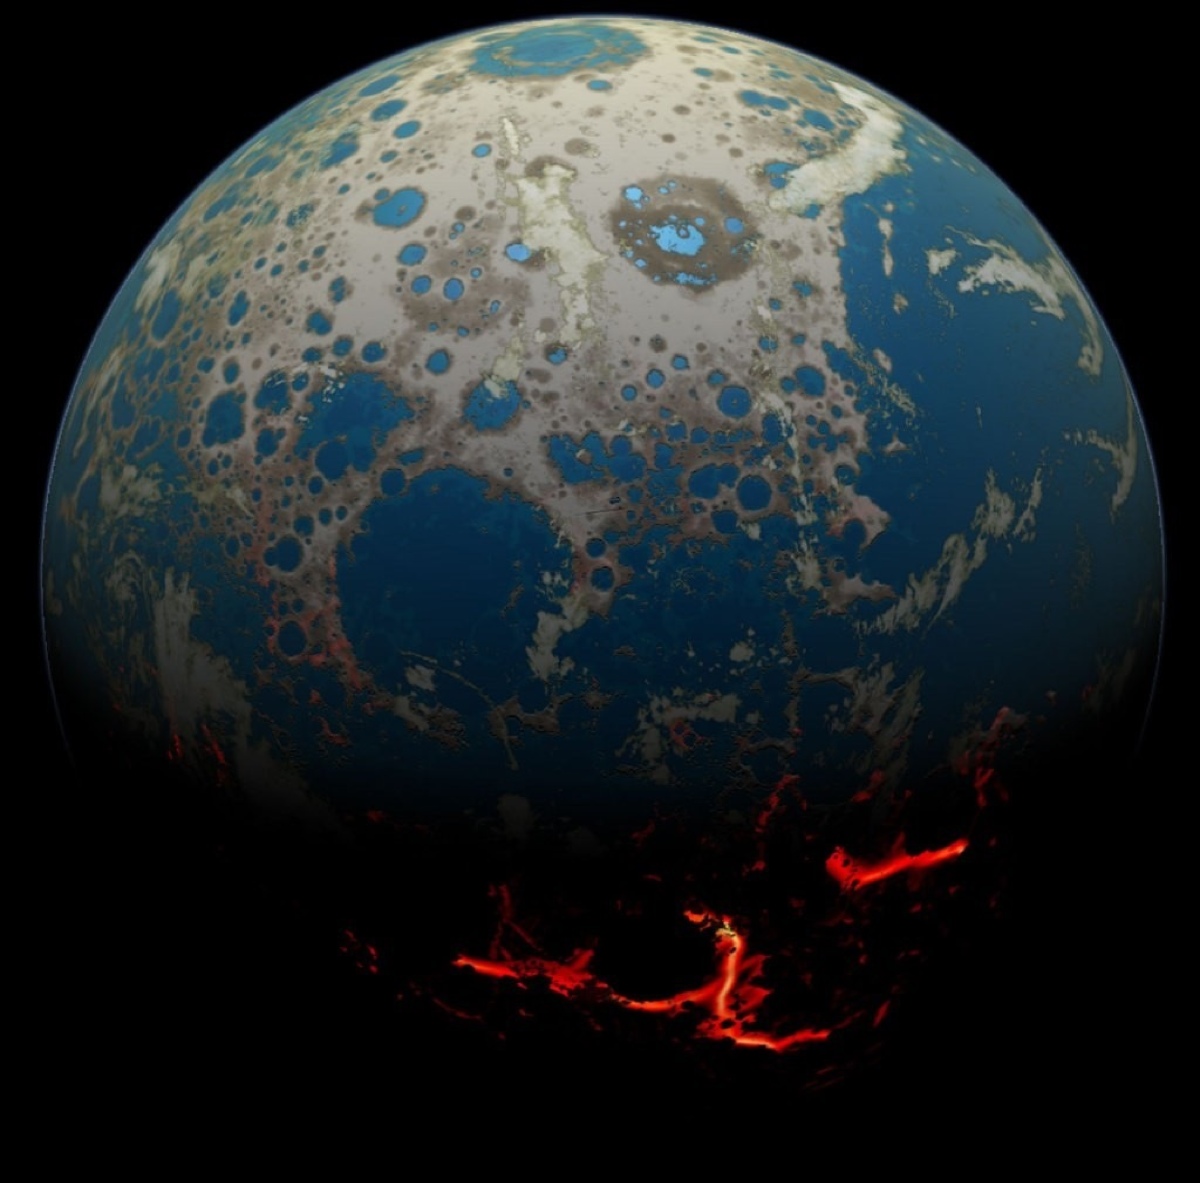 这张图片呈现了在四十亿年前,冥古代 (hadean)时的地球.